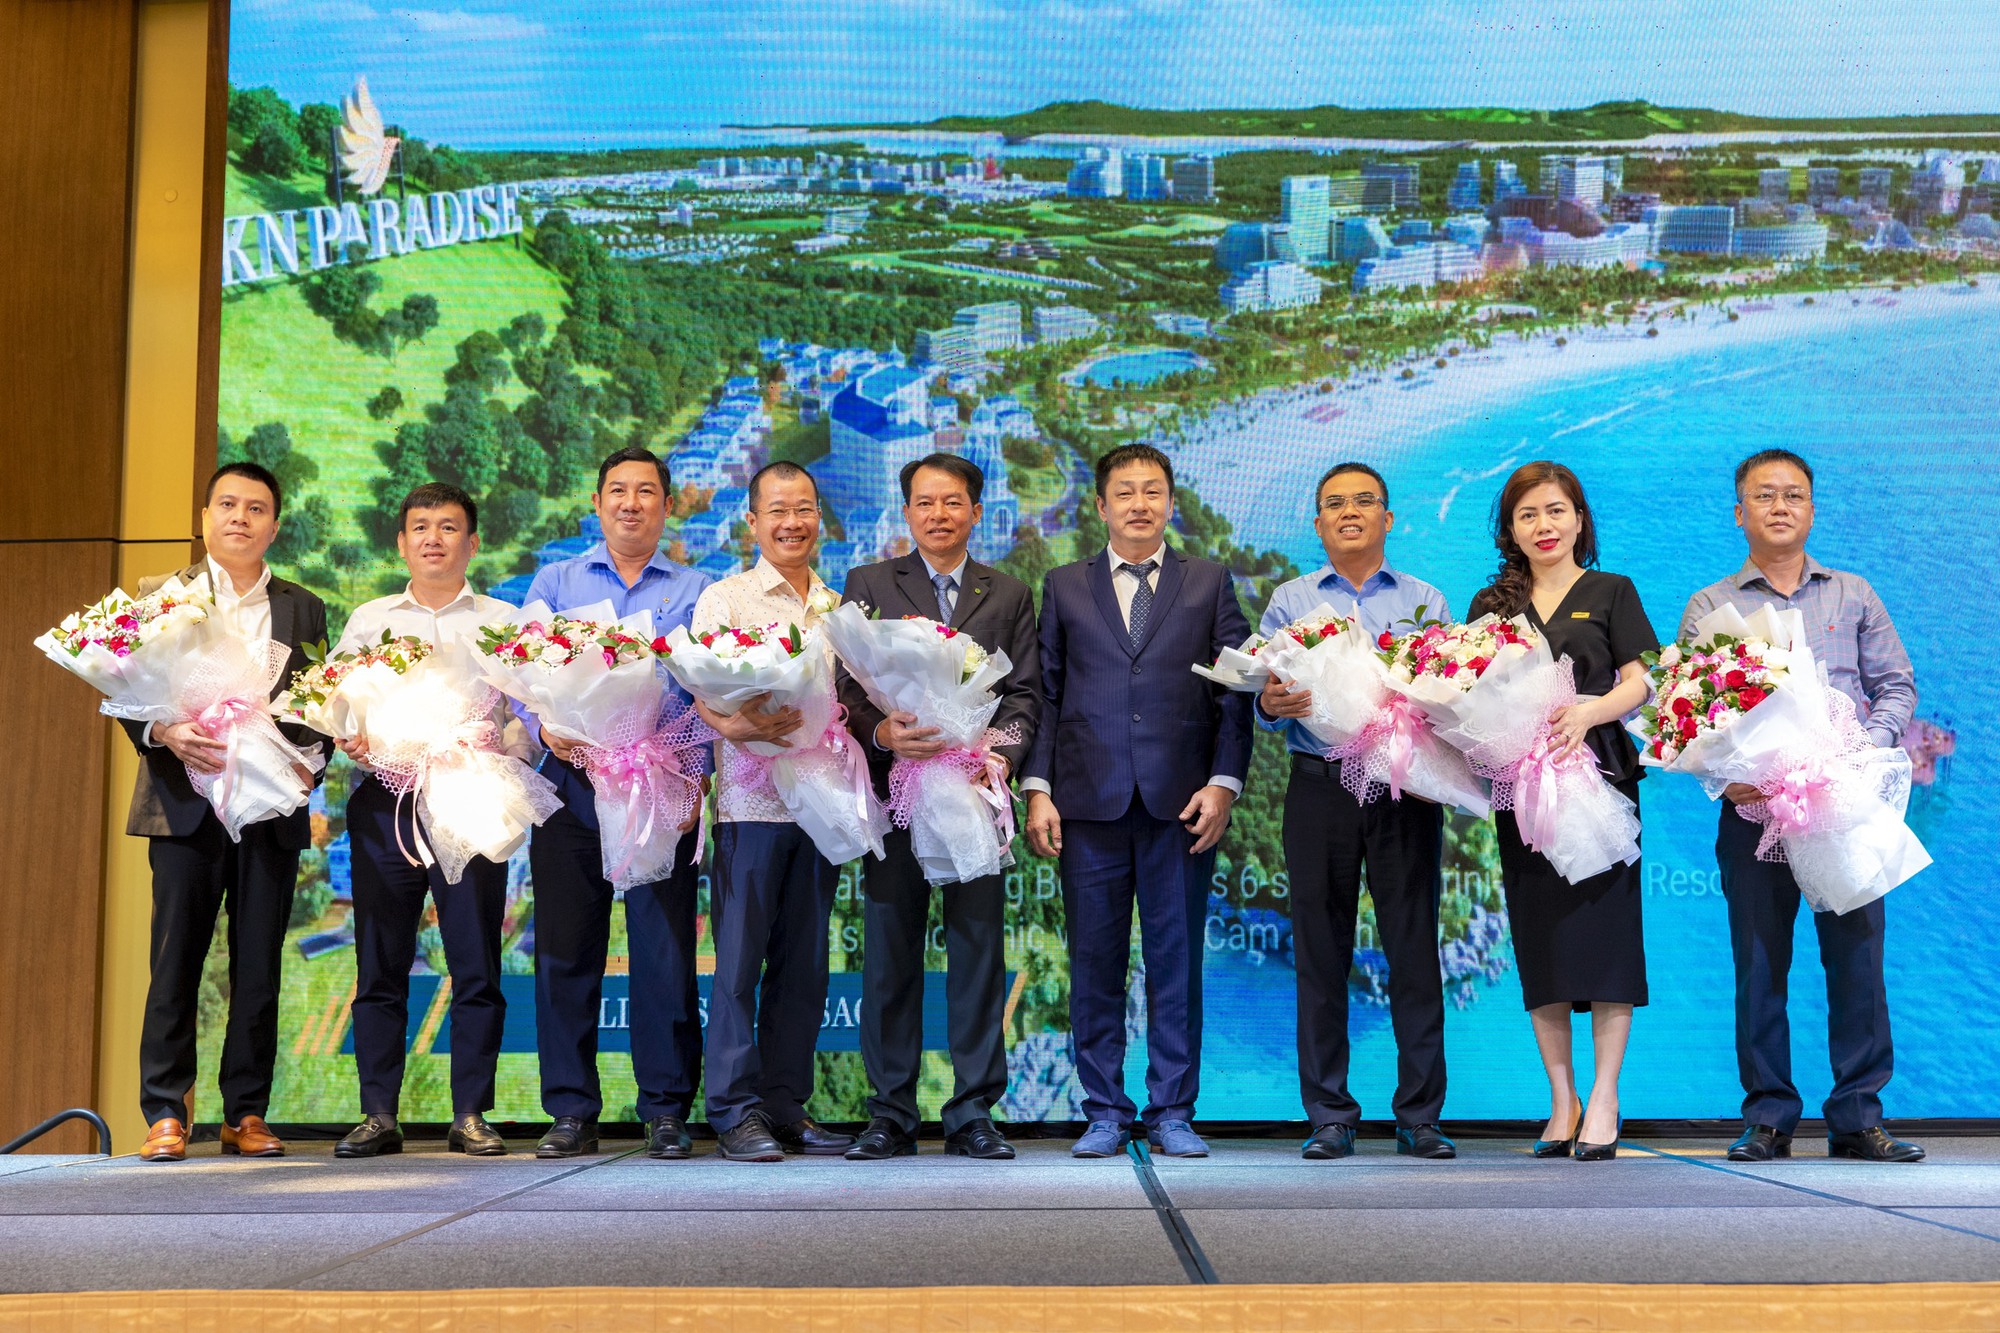 Đại diện Chủ đầu tư dự án KN Paradise tặng hoa các đối tác tài trợ tài chính là các ngân hàng hàng đầu tại Việt Nam